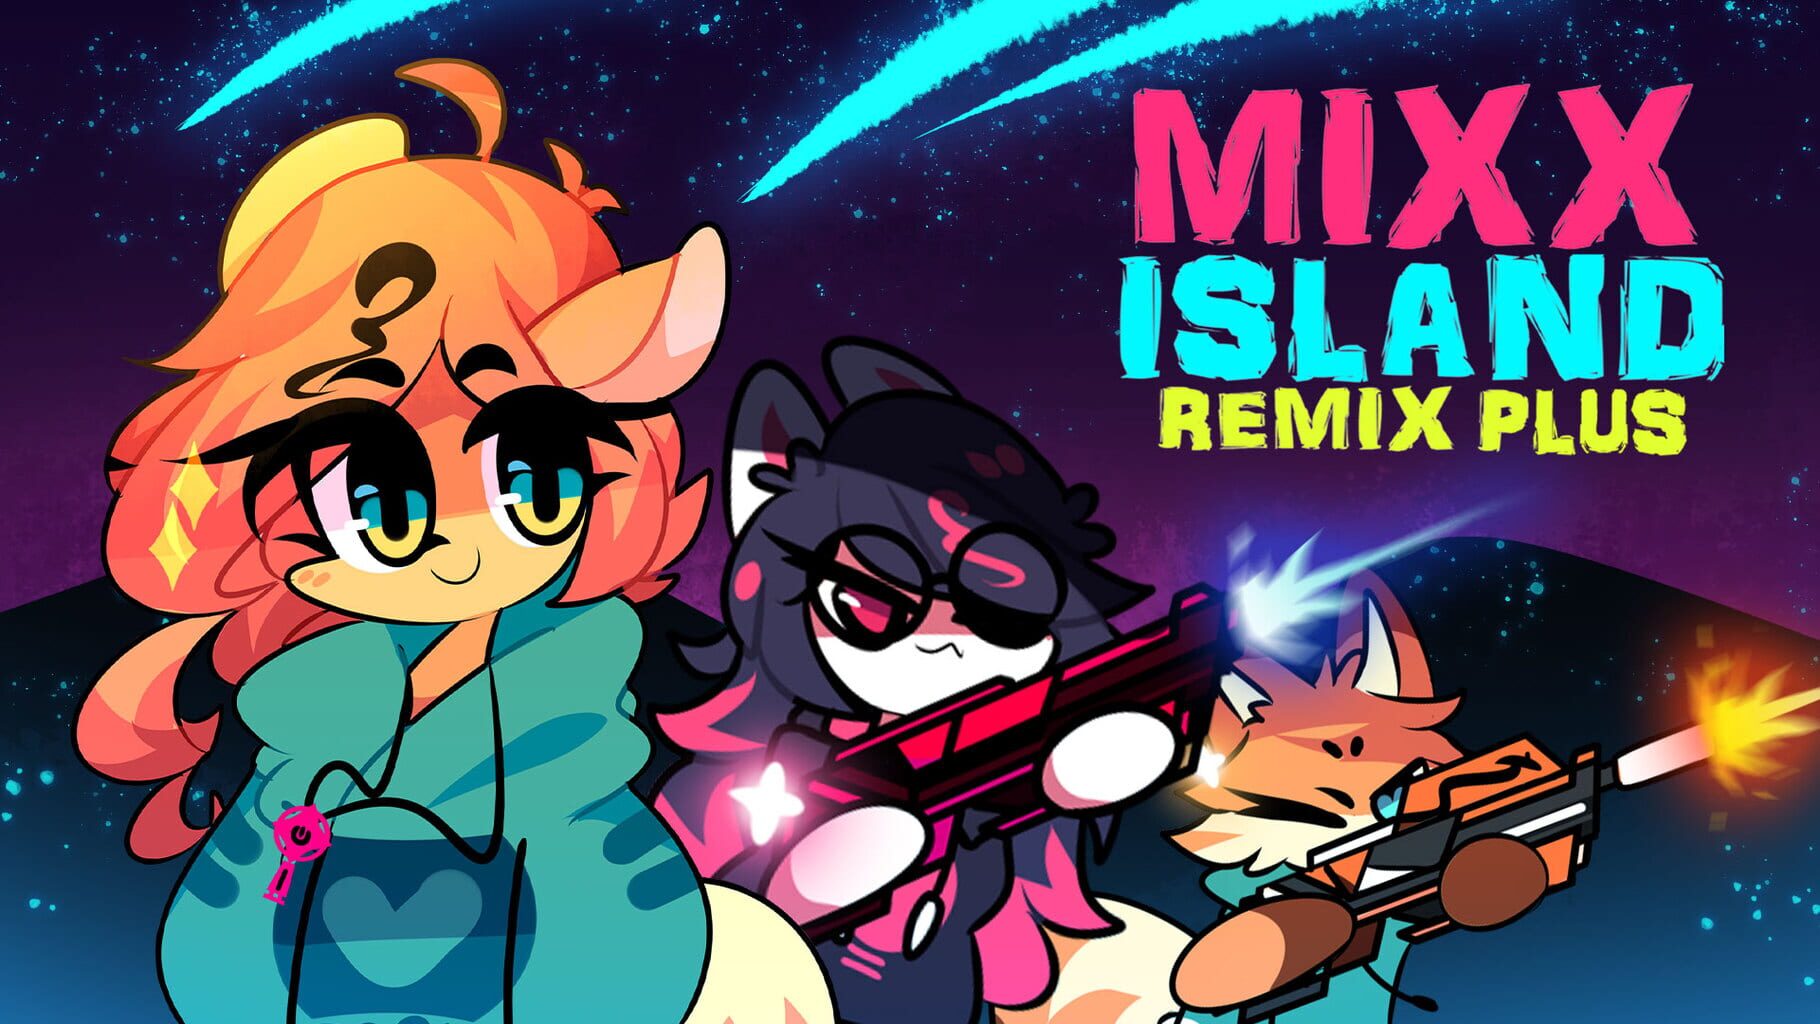 Arte - Mixx Island: Remix Plus